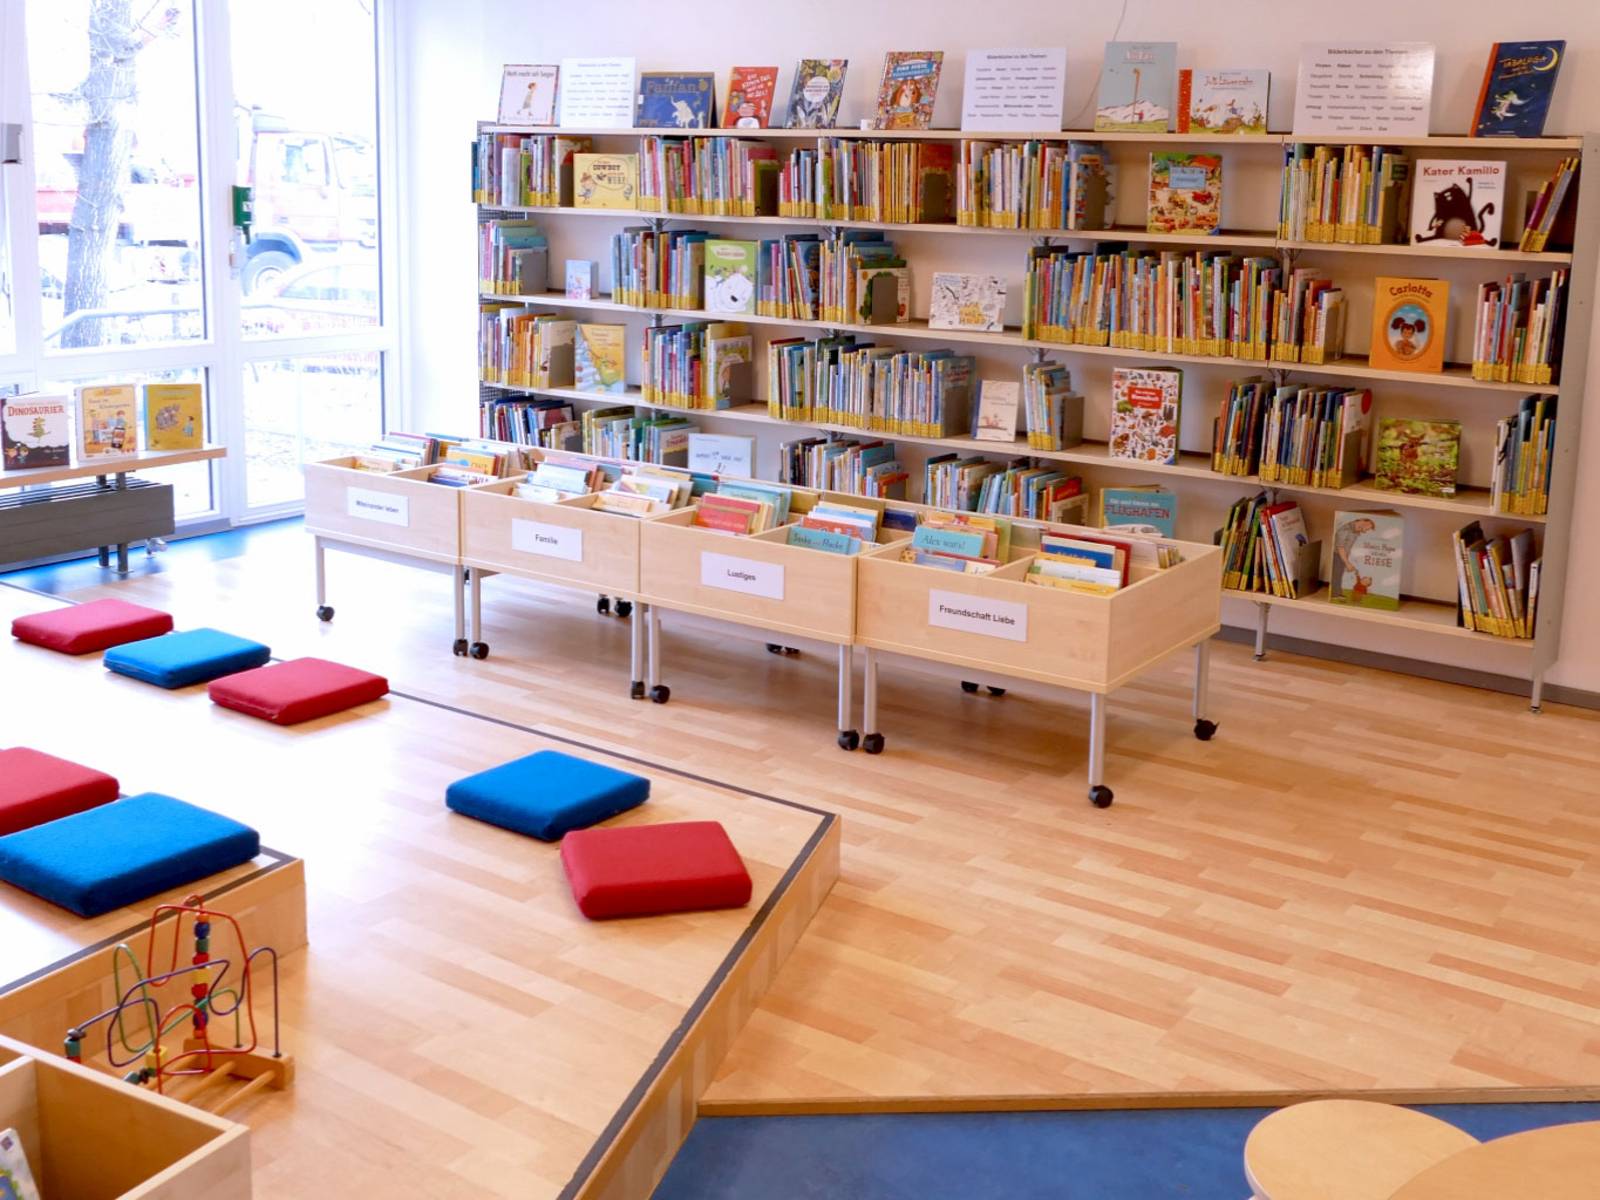 Kinder- und Jugendbibliothek Südstadt